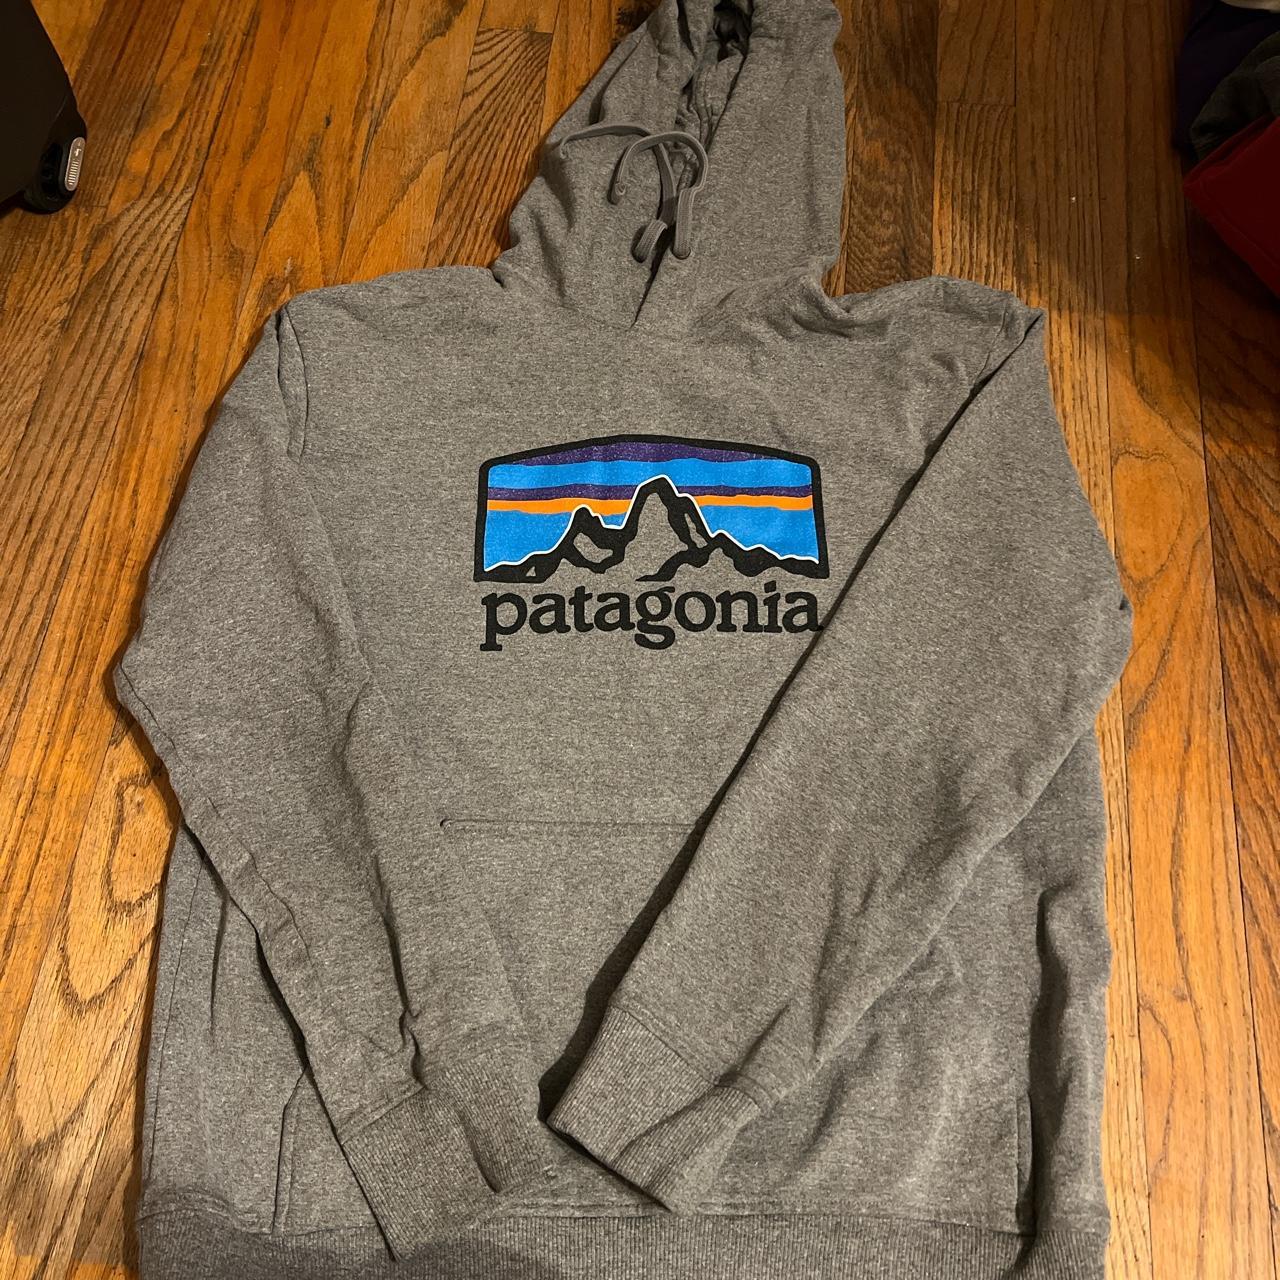 Men's Patagonia Hoodie. No stains or tears. Lots of - Depop